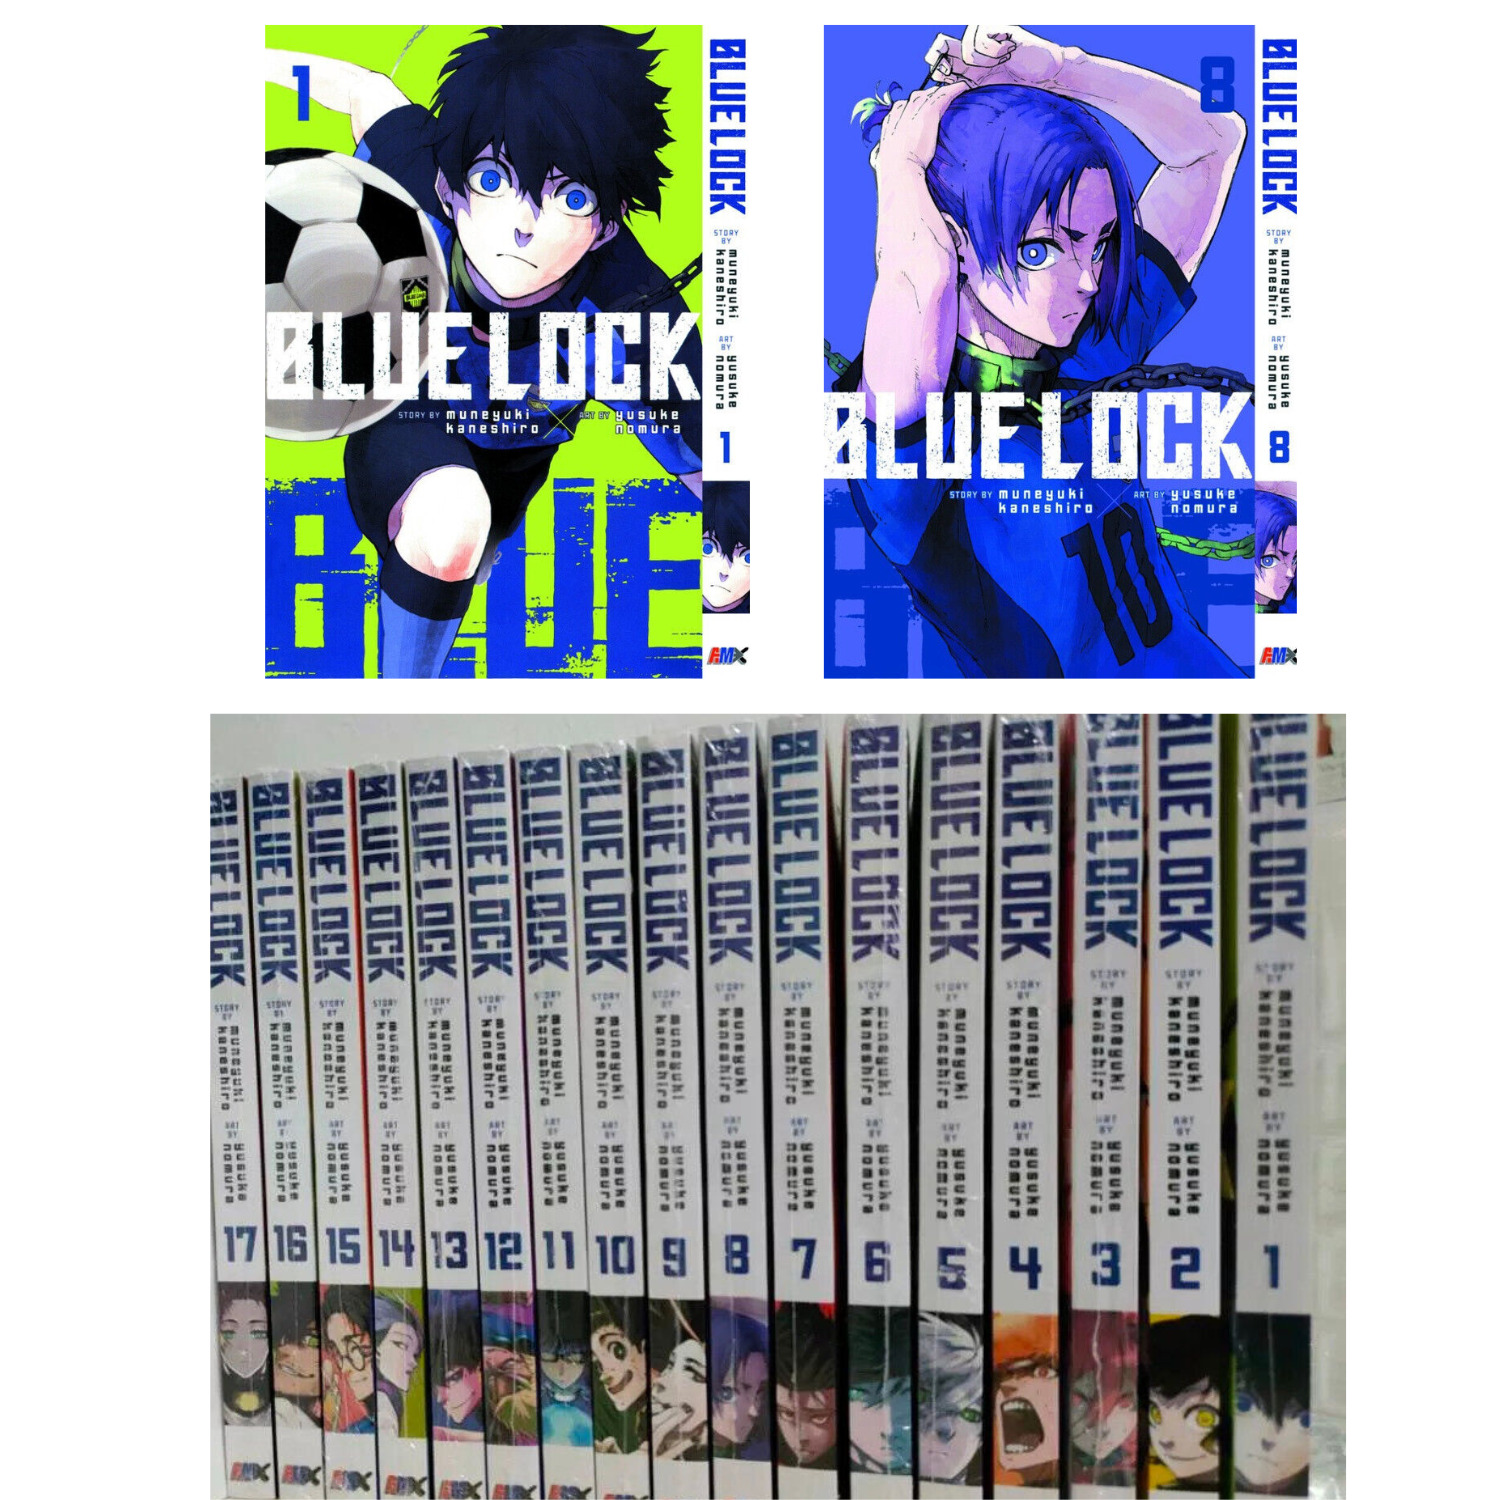 BLUE LOCK English Comics Vol 1-24 Full Set Complete New Book Manga Anime DHL Exp